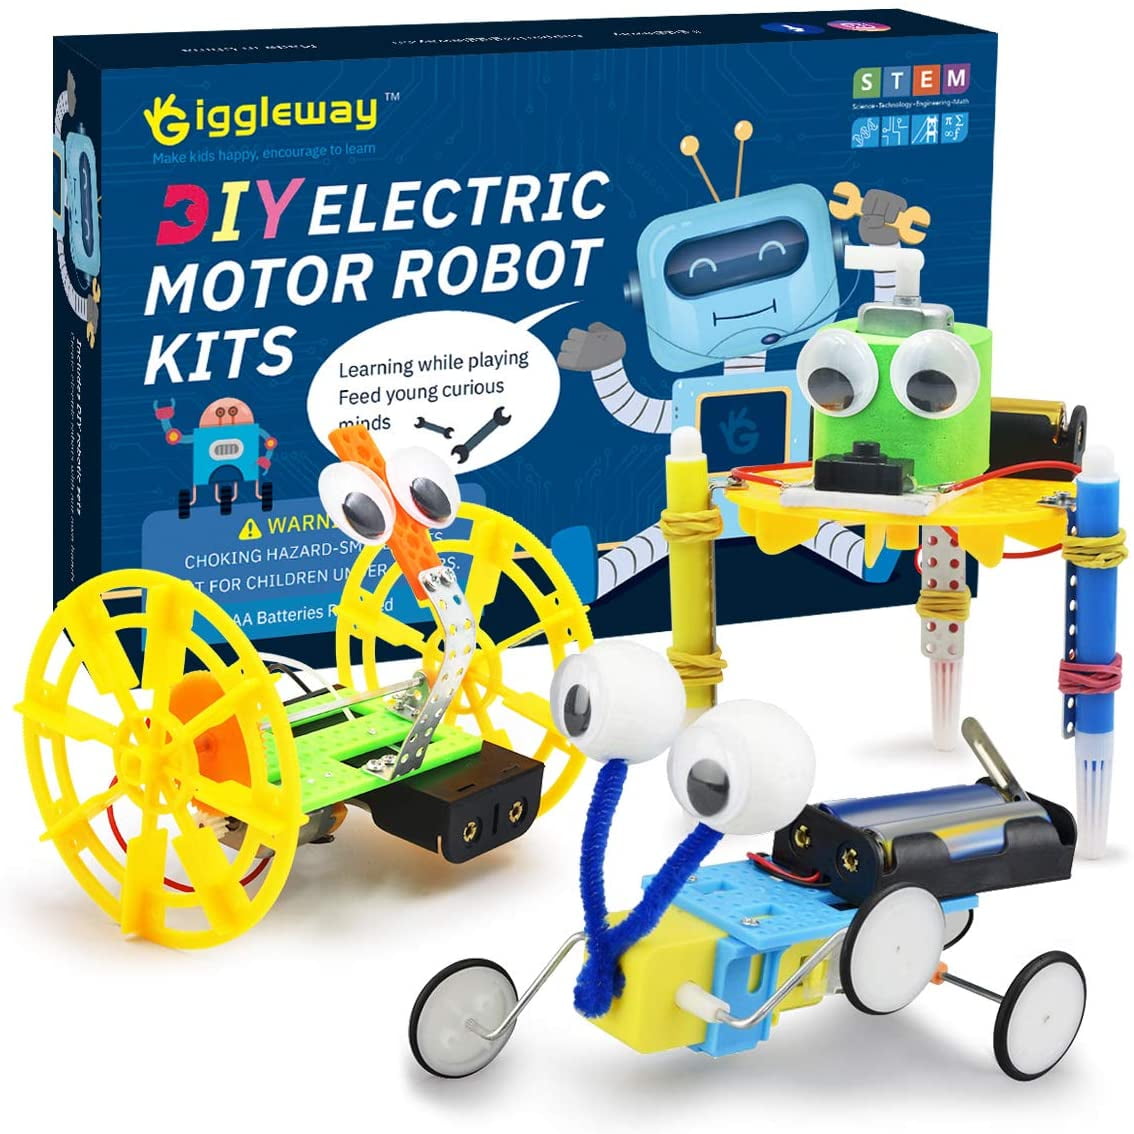 Kids Weaving Loom Kit - Science Diy Toy For Girls, Educational